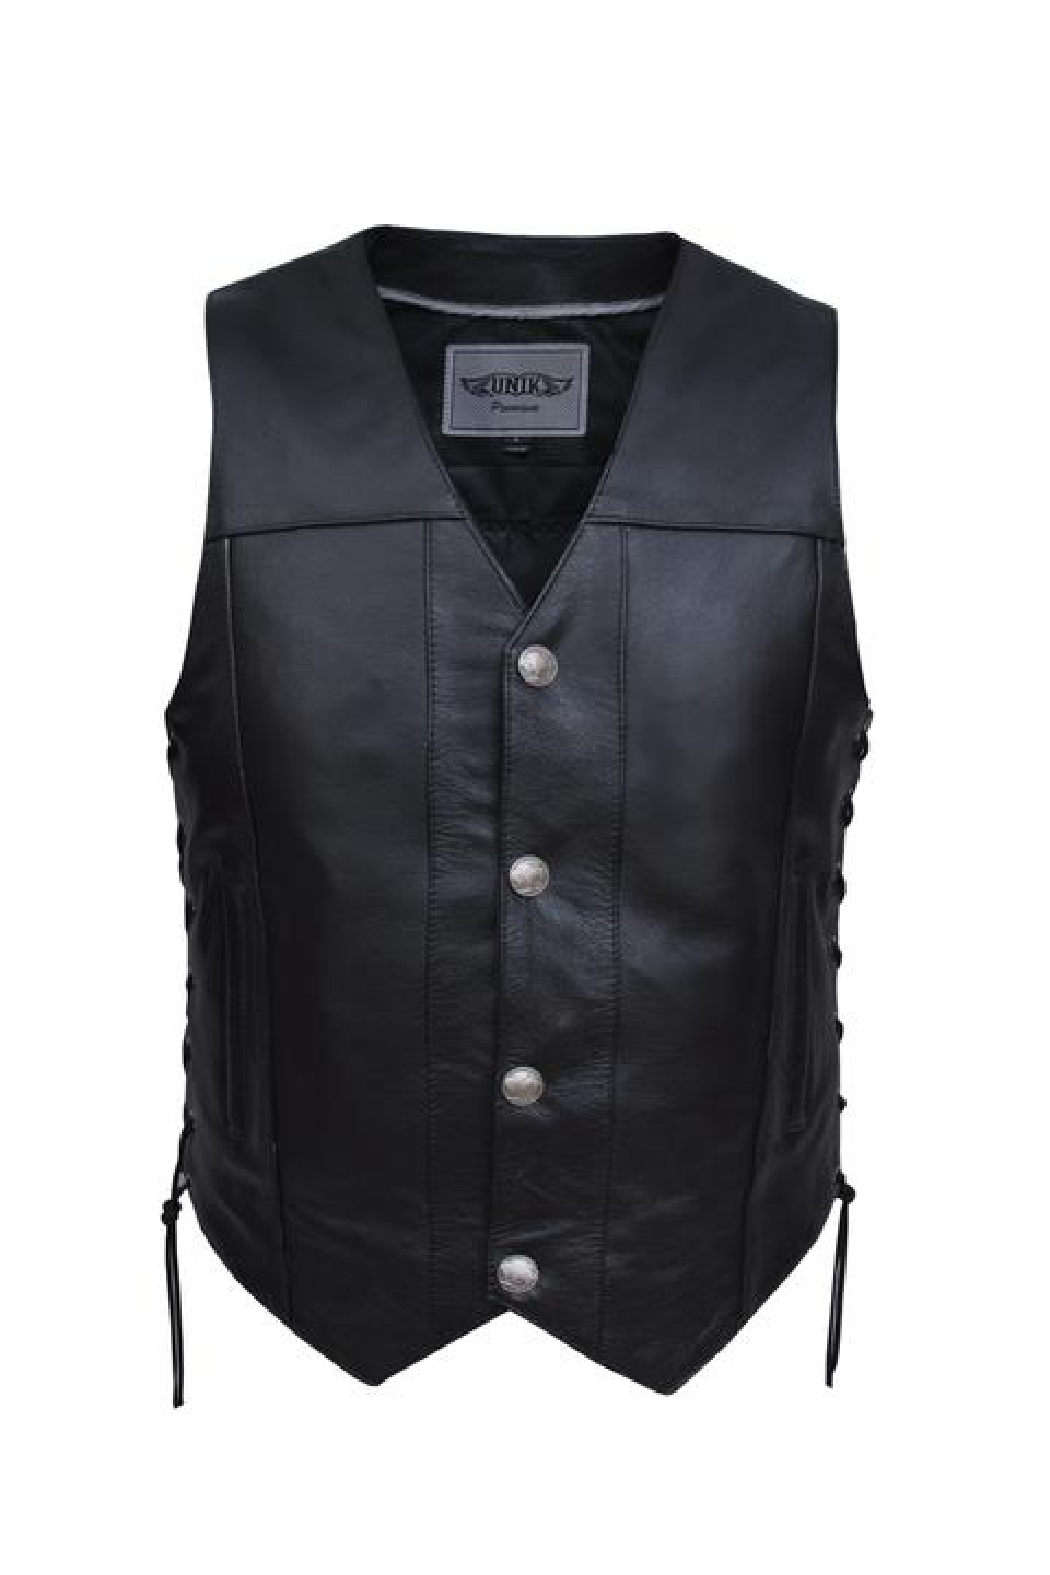 Unik Premium 1.2mm Leather Vest.